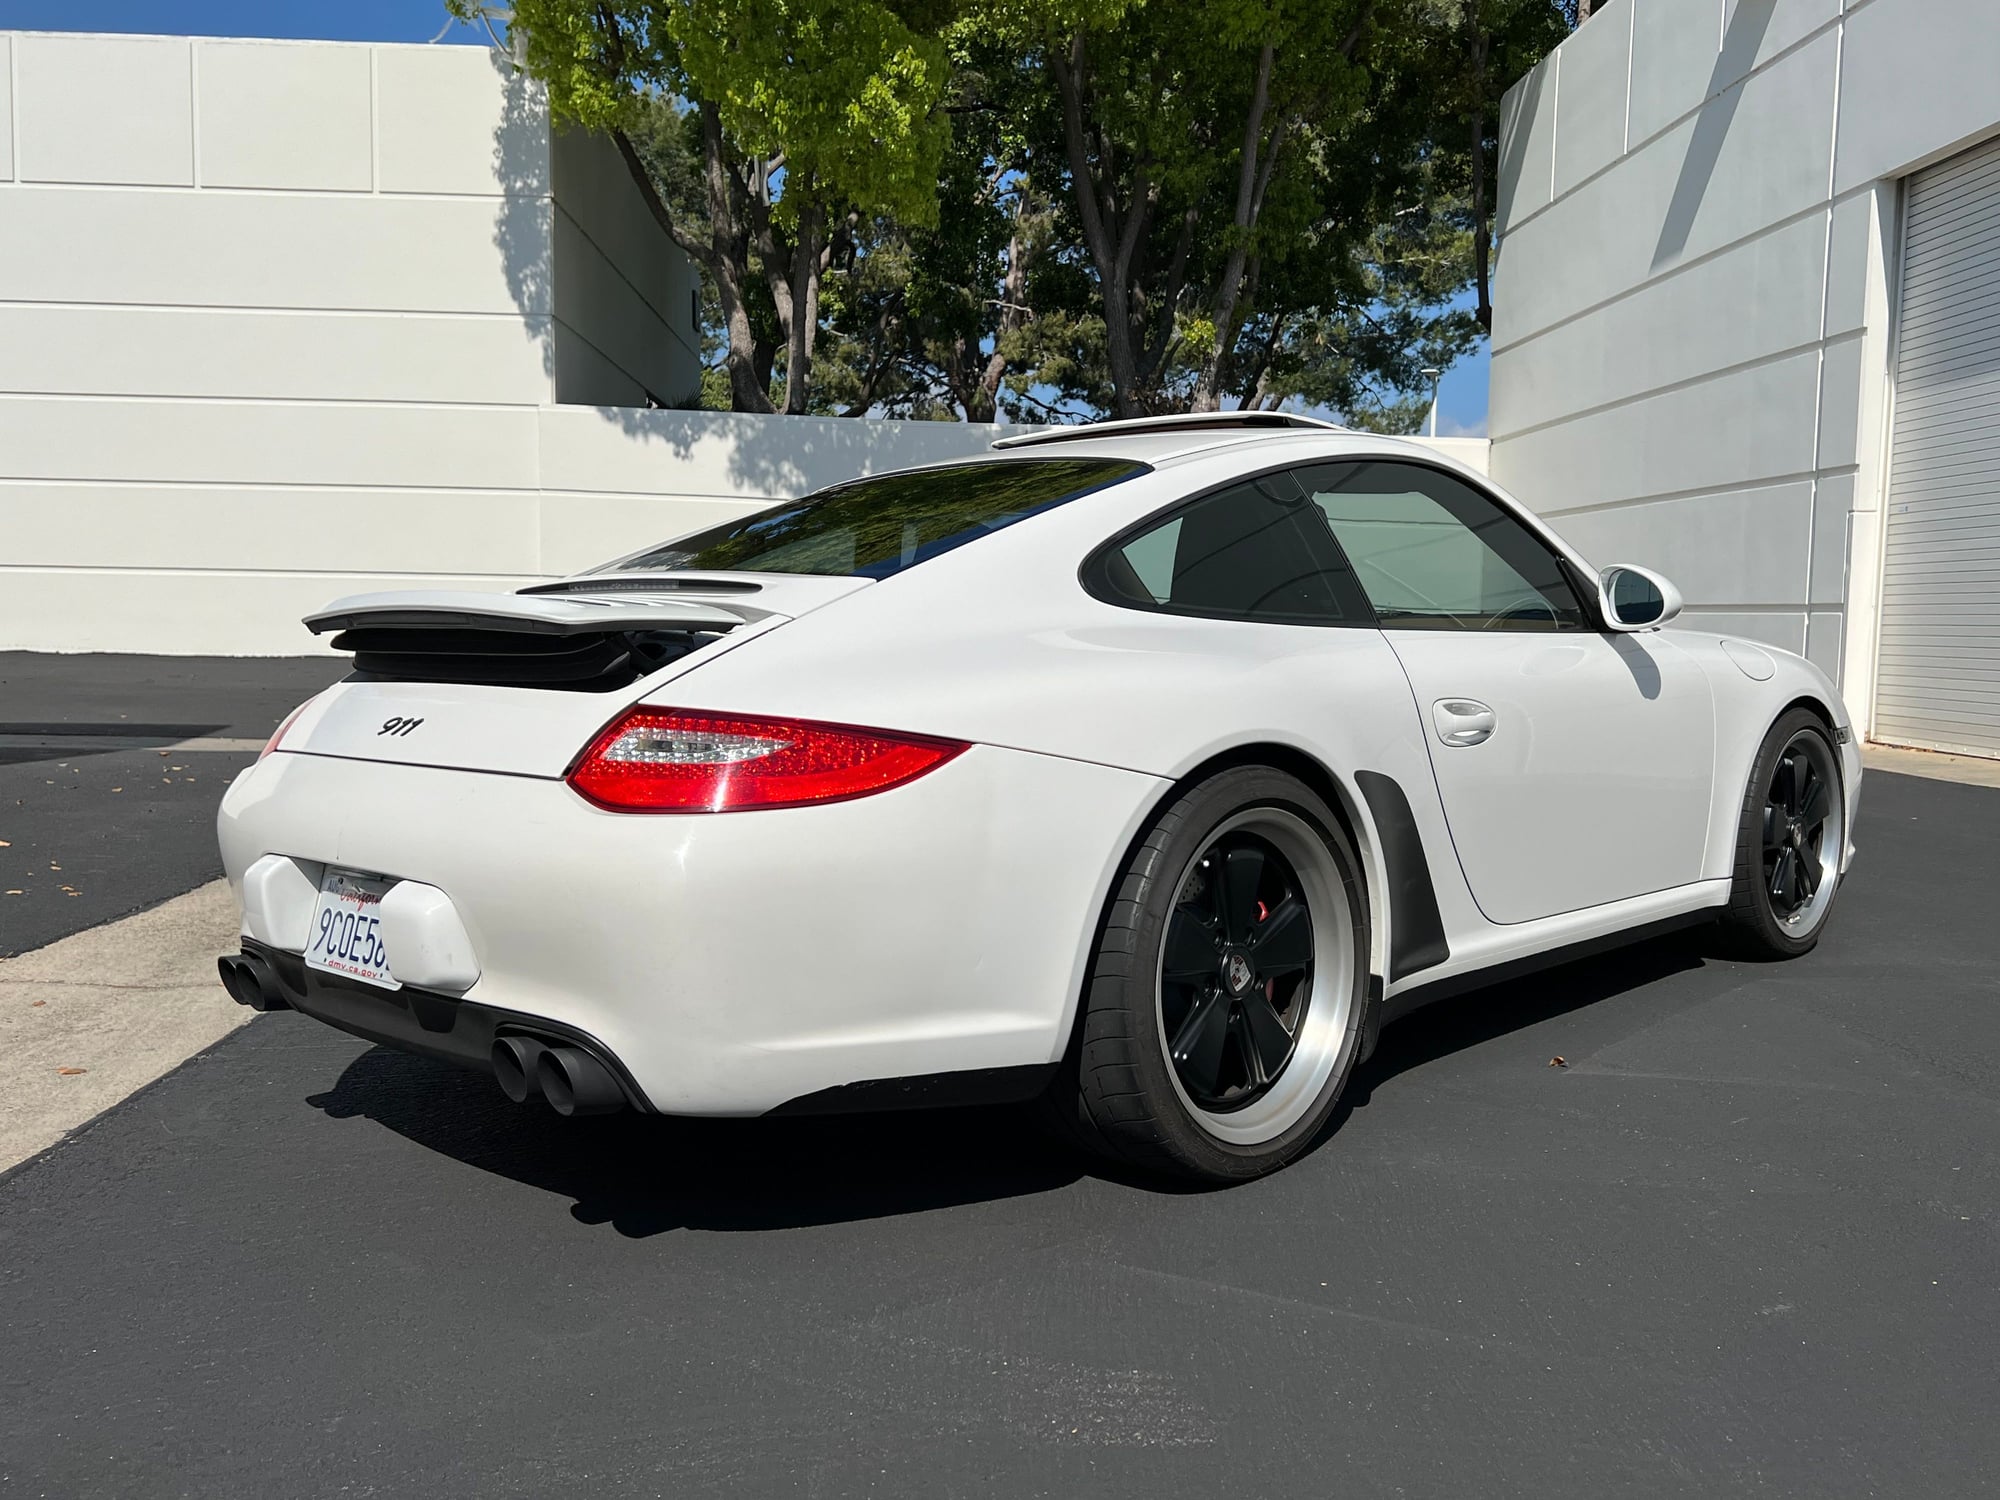 2011 Porsche 911 - 2011 997.2 Carrera White - w Porsche CPO Warranty - Used - VIN WP0AA2A90BS706192 - 69,000 Miles - 6 cyl - 2WD - Automatic - Coupe - White - Orange County, CA 92618, United States